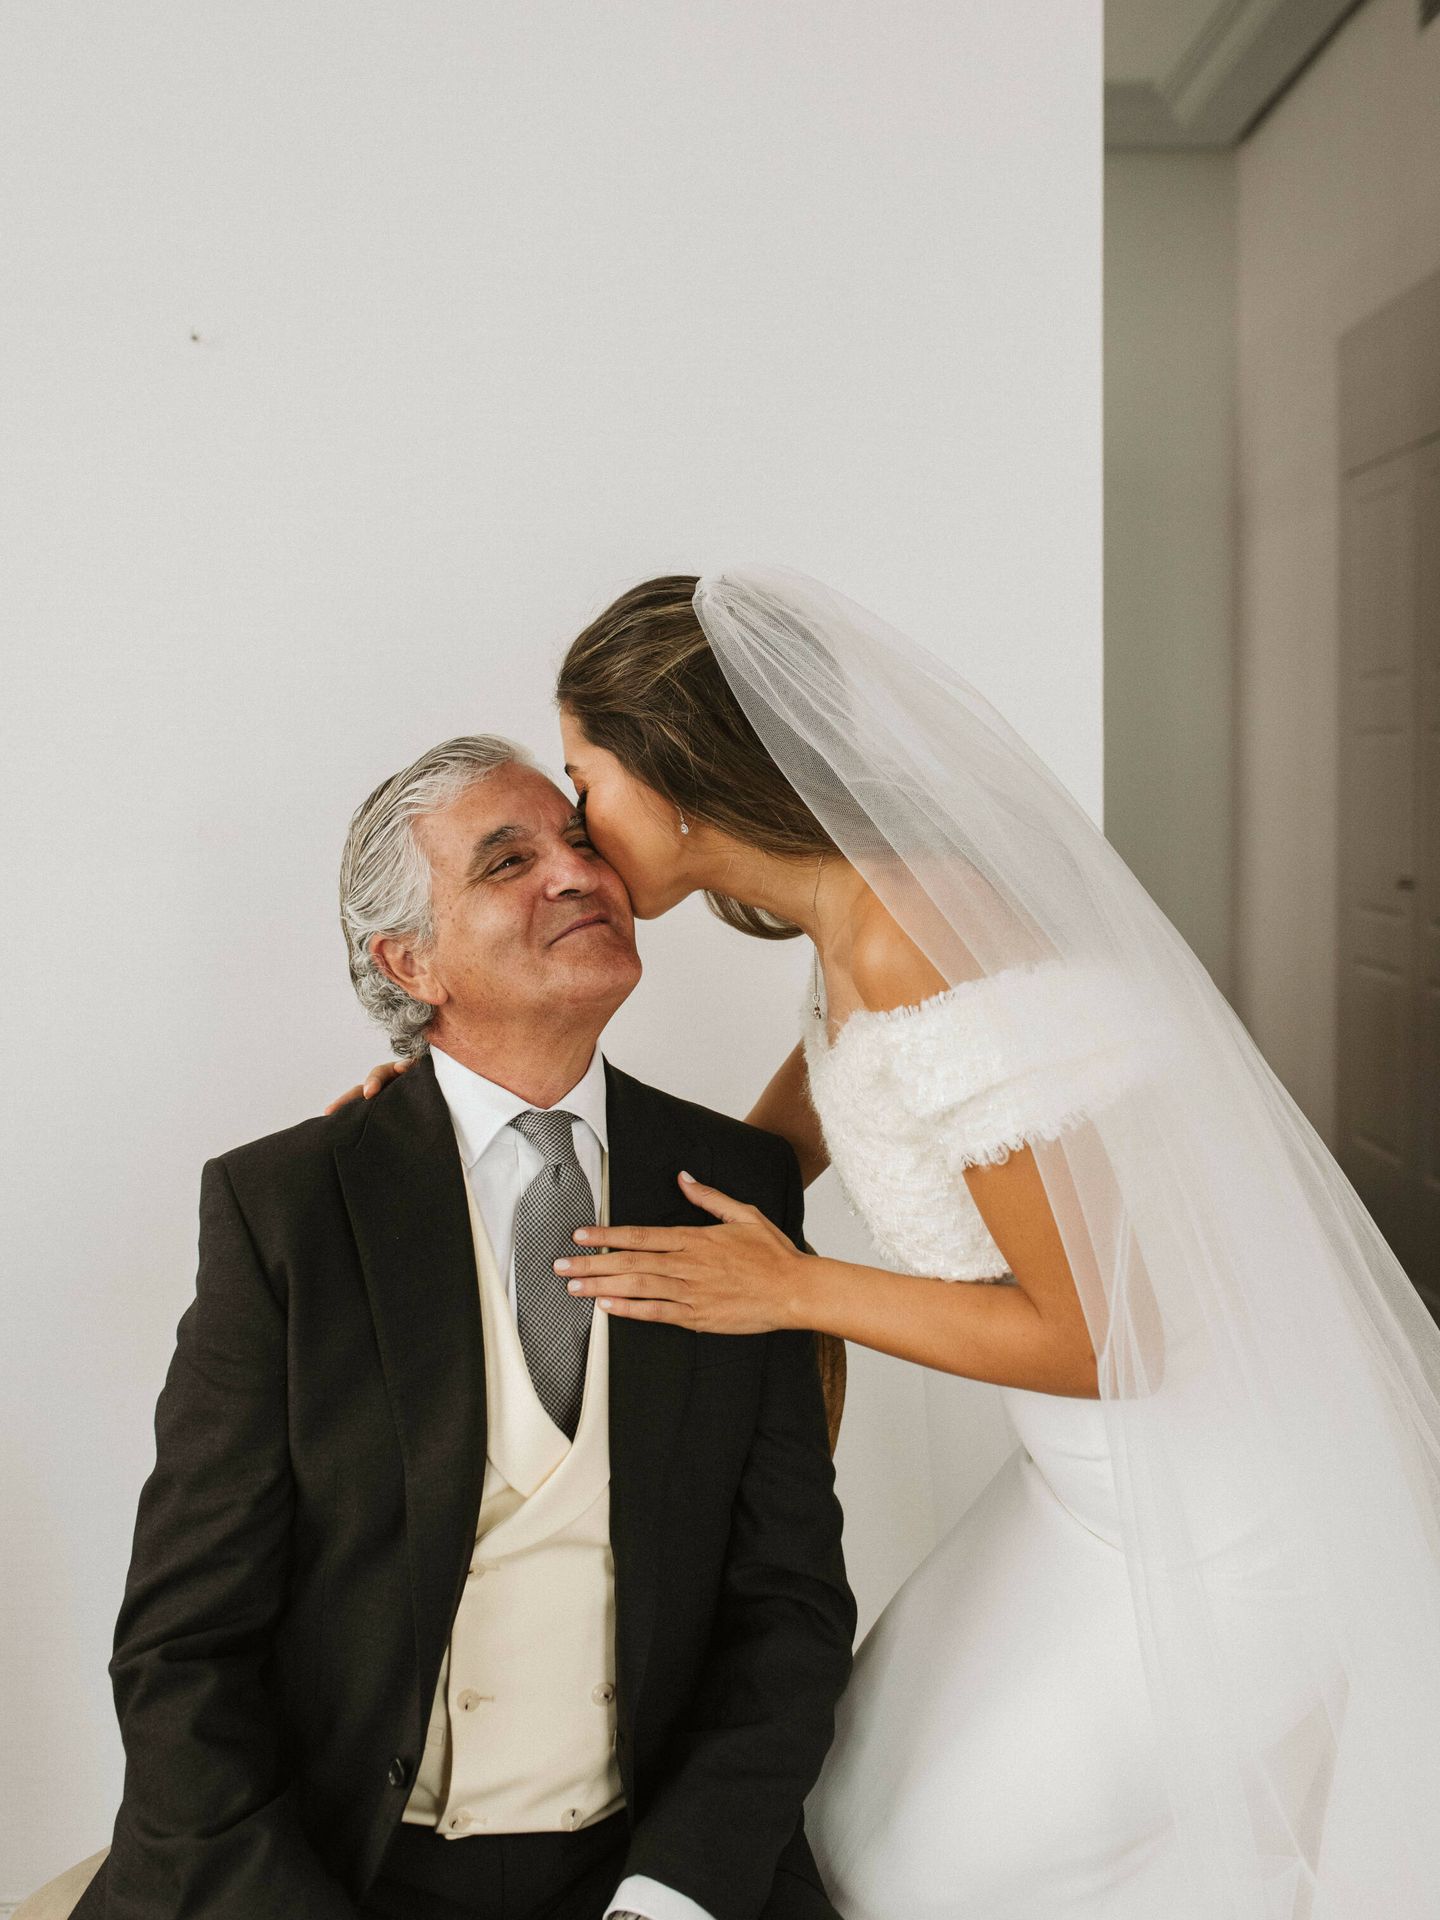 La boda de Paula y Álvaro en Madrid. (Plataforma)